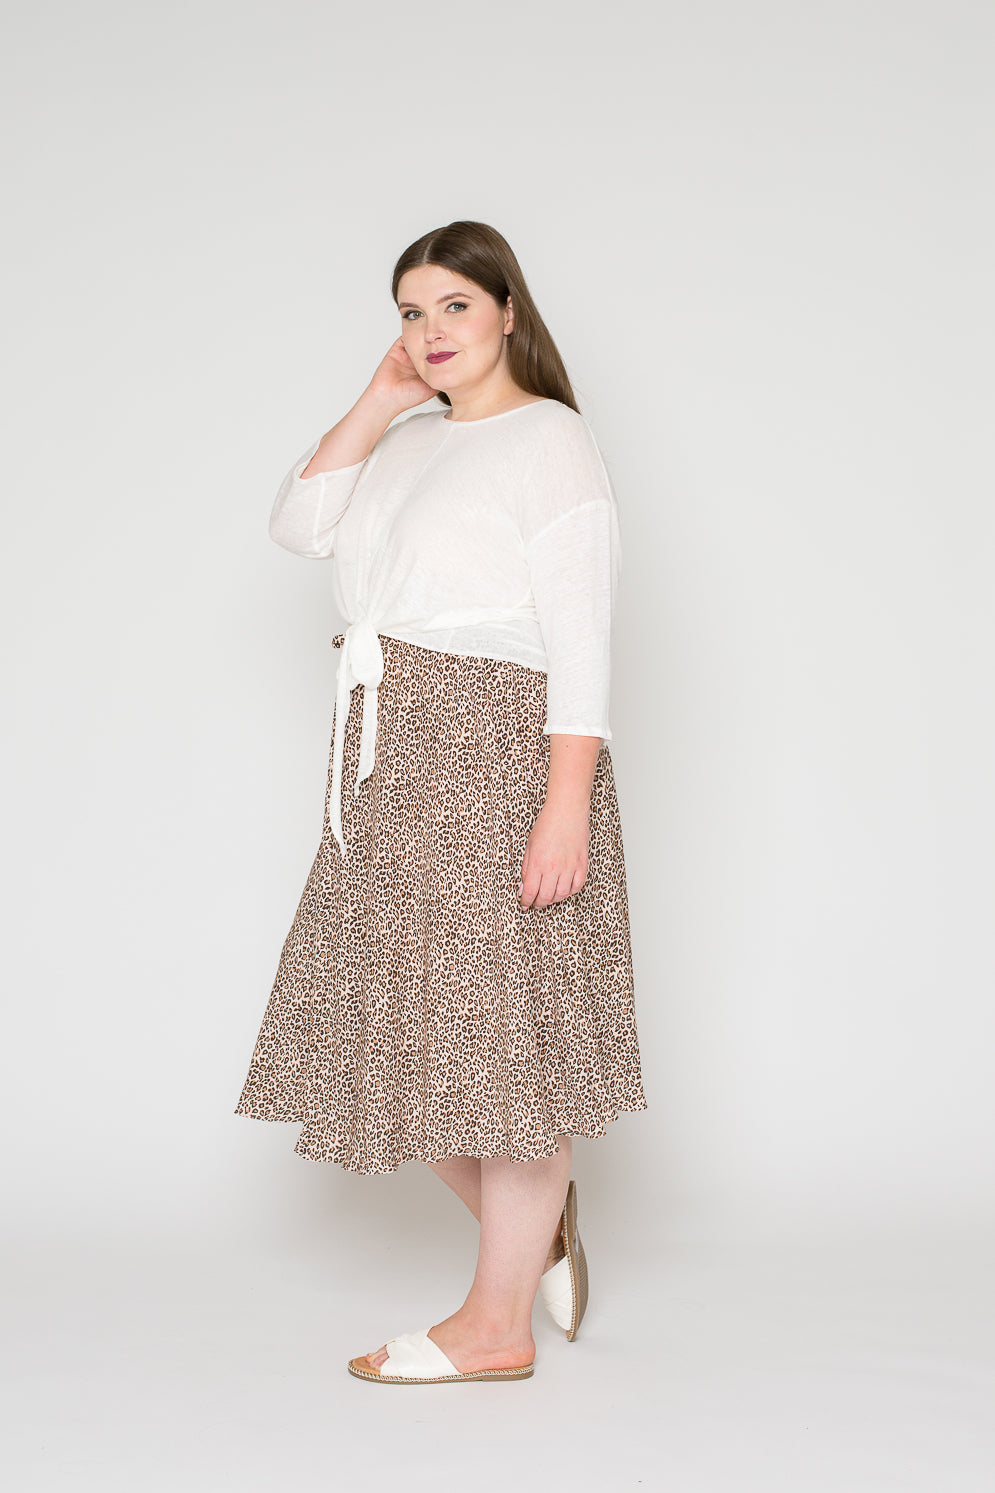 Paper pattern skirt June